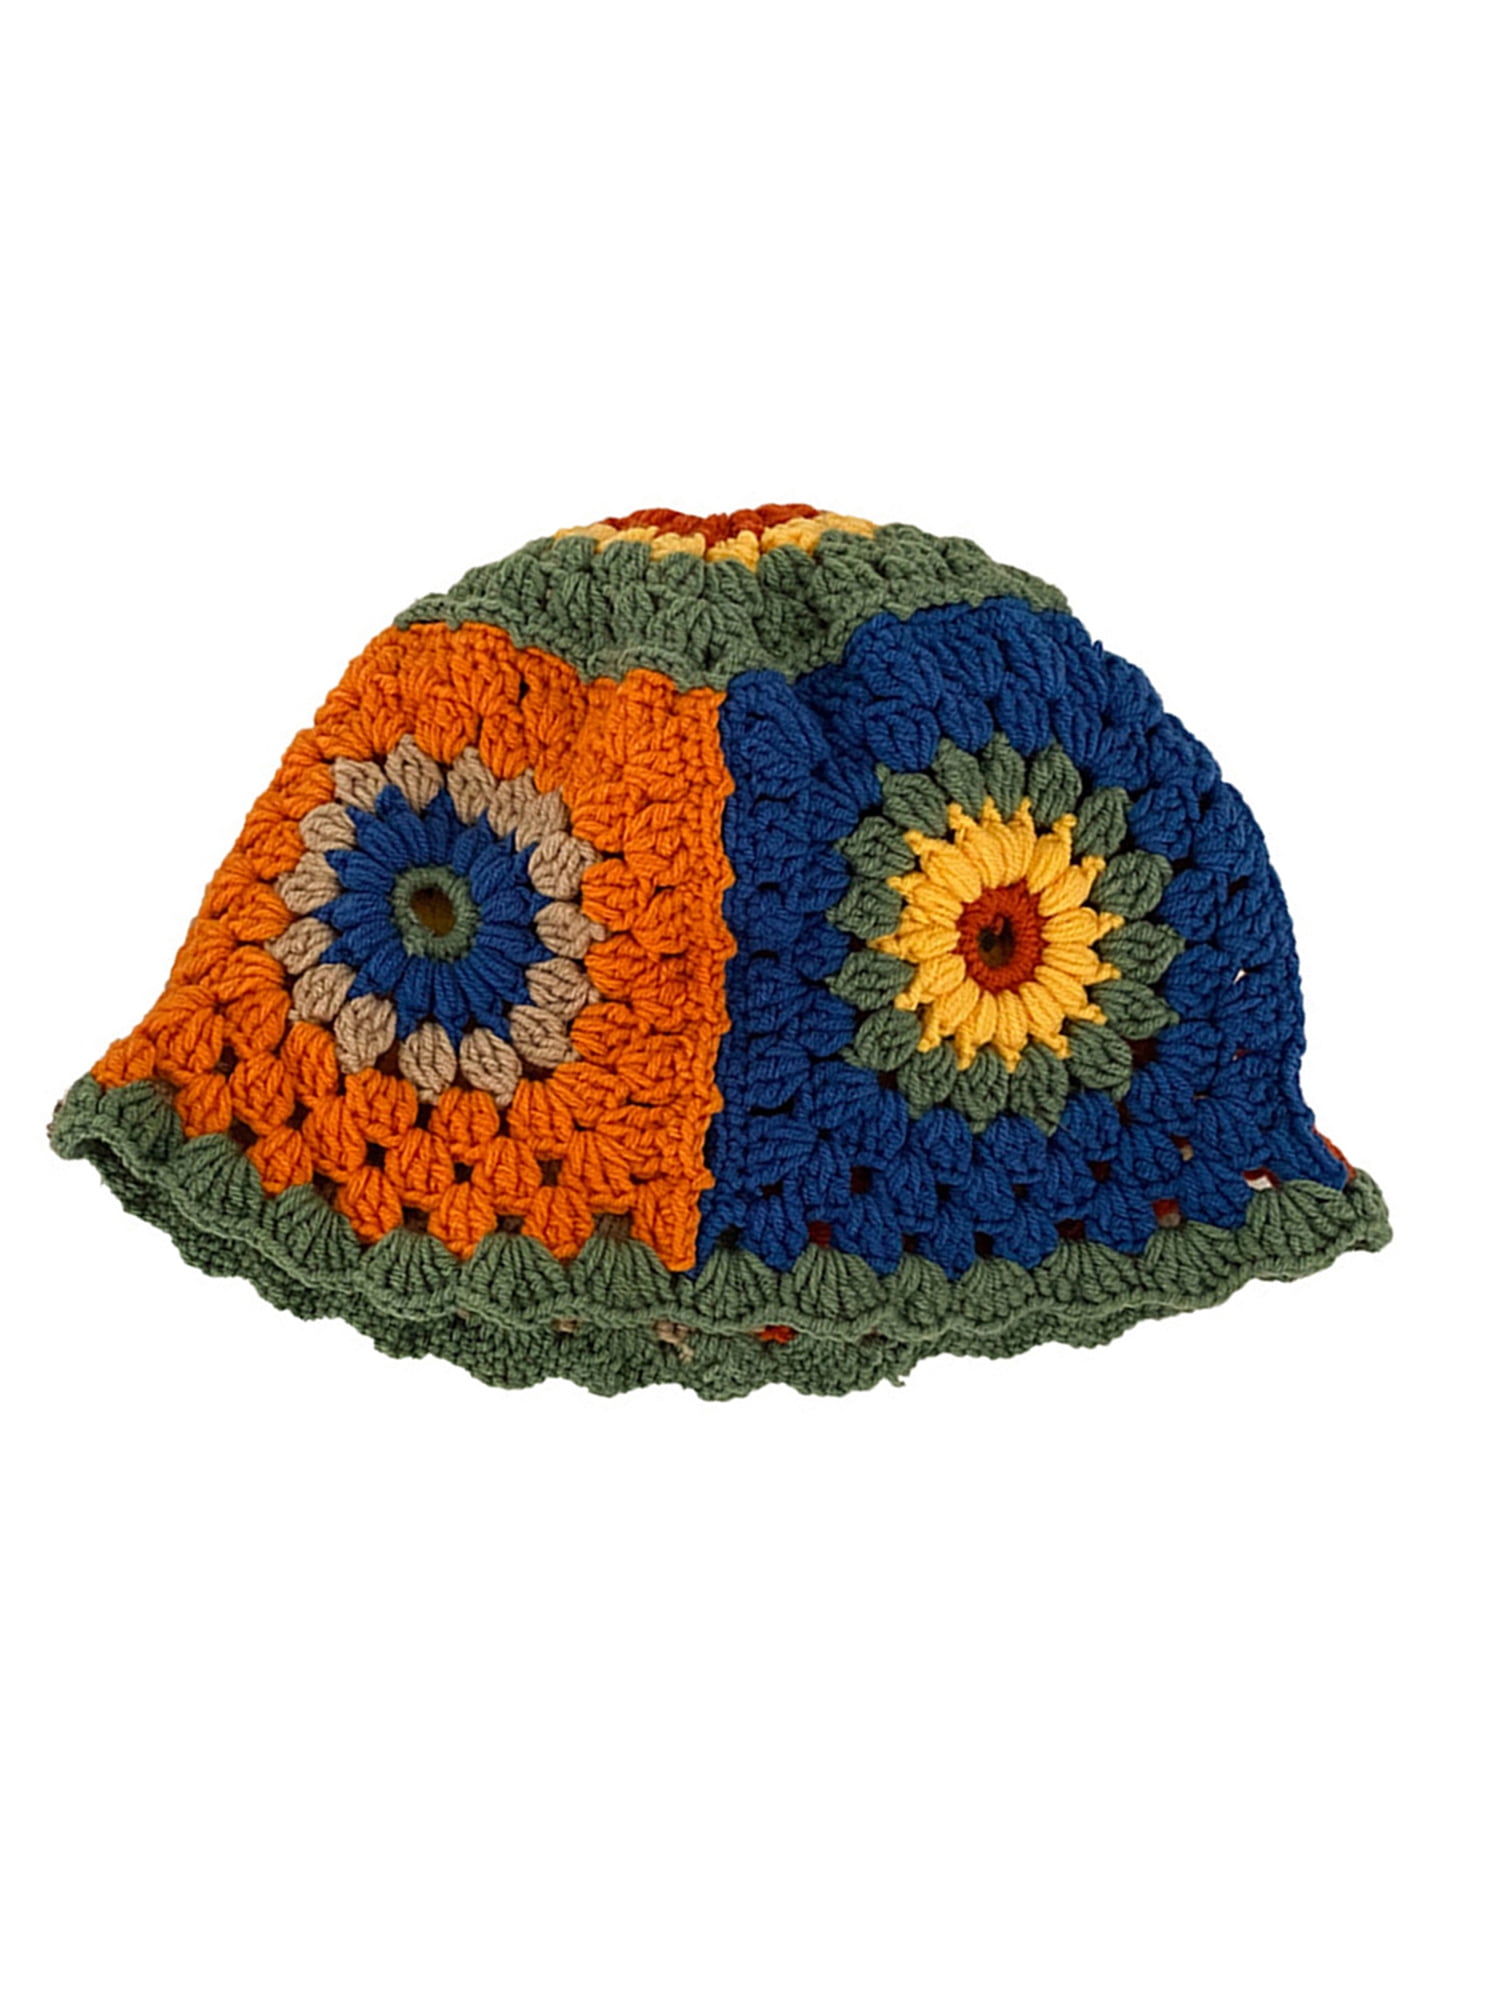 JINSIJU Women Crochet Bucket Hat Cute Flower Pattern Knitted Fisherman Hat  Summer Trendy Outdoor Wide Brim Sun Cap